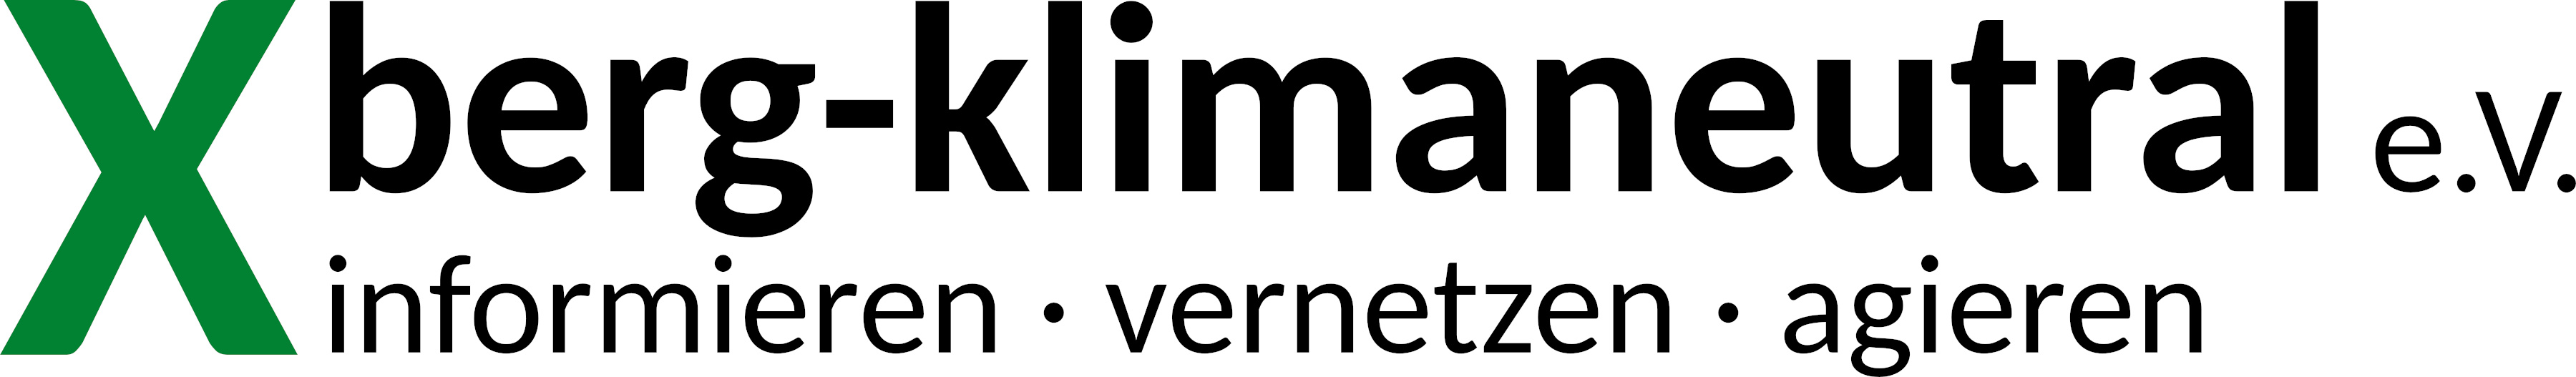 Logo Xberg-klimaneutral e.V. informieren - vernetzen - agieren - zur Webseite